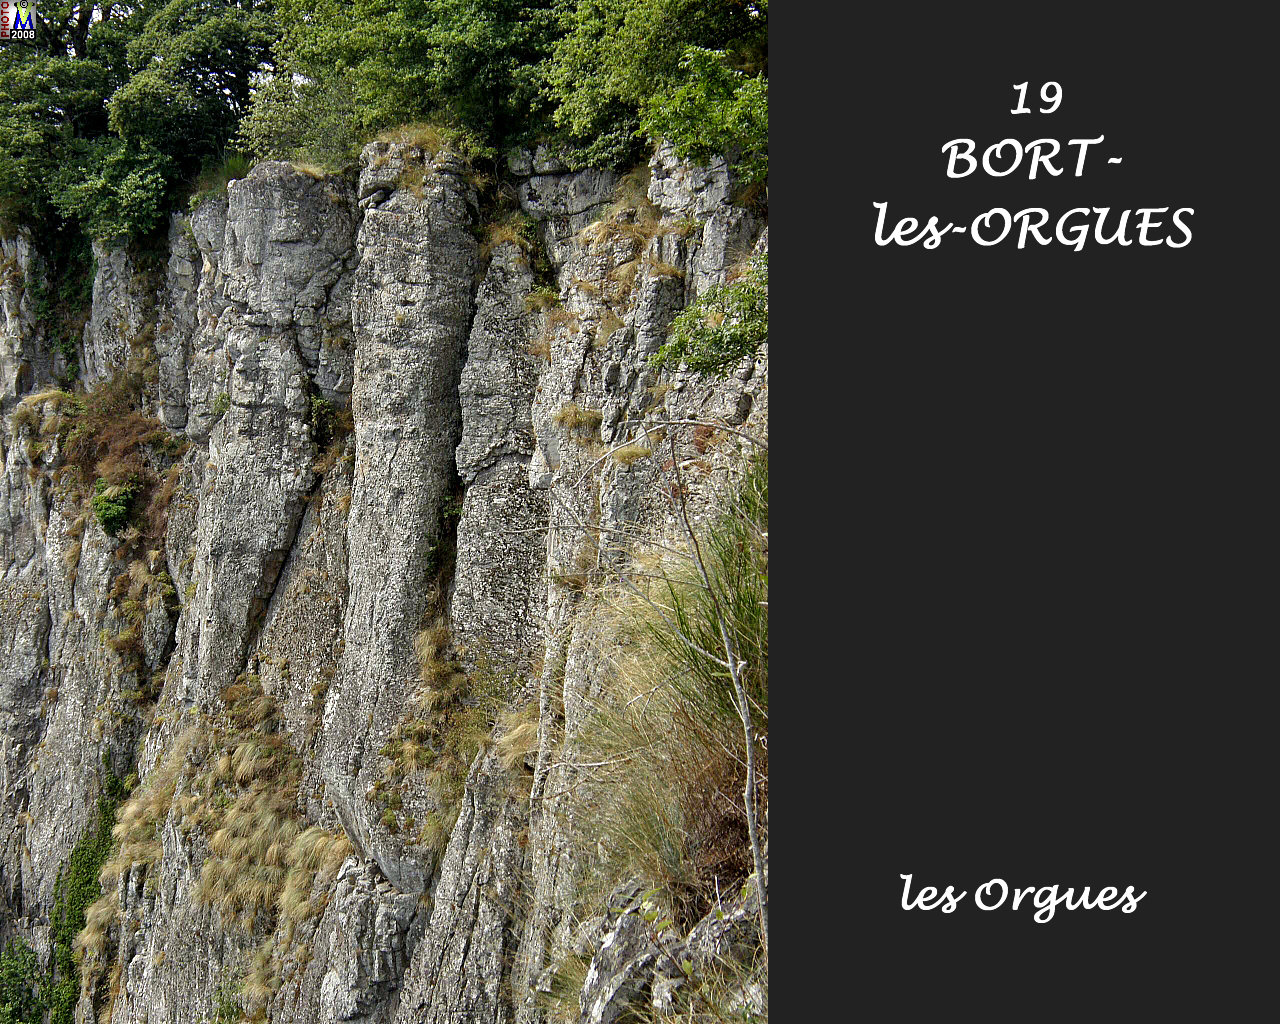 19BORT-ORGUES_orgues_106.jpg